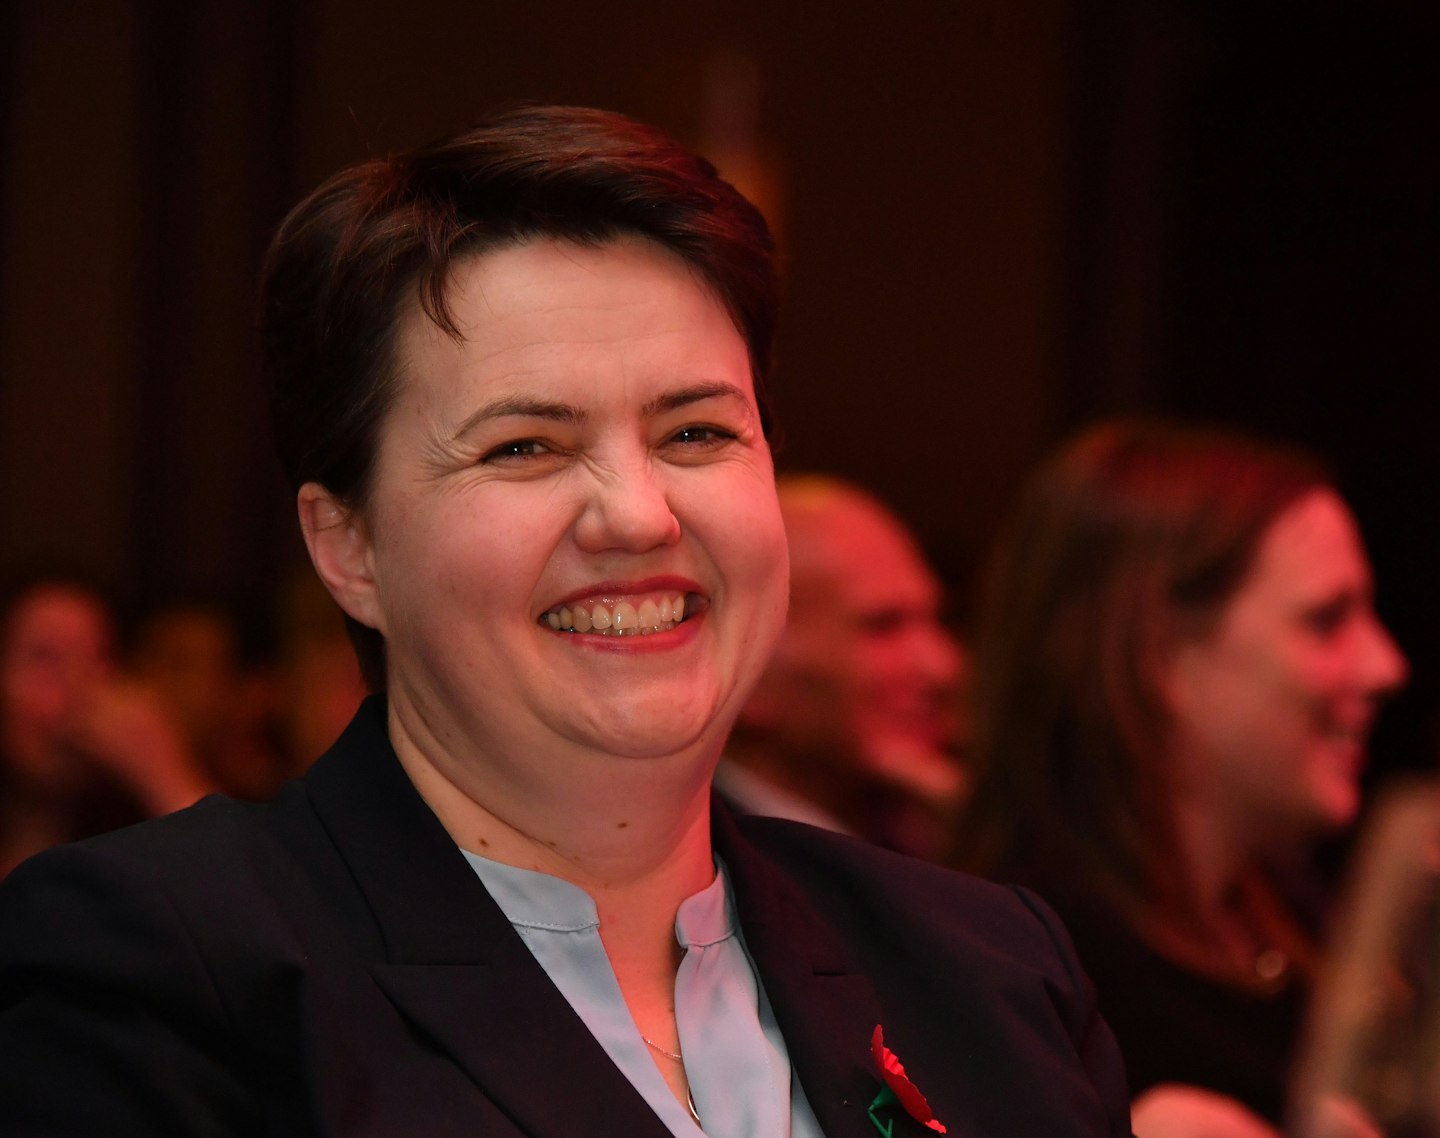 Ruth Davidson MP